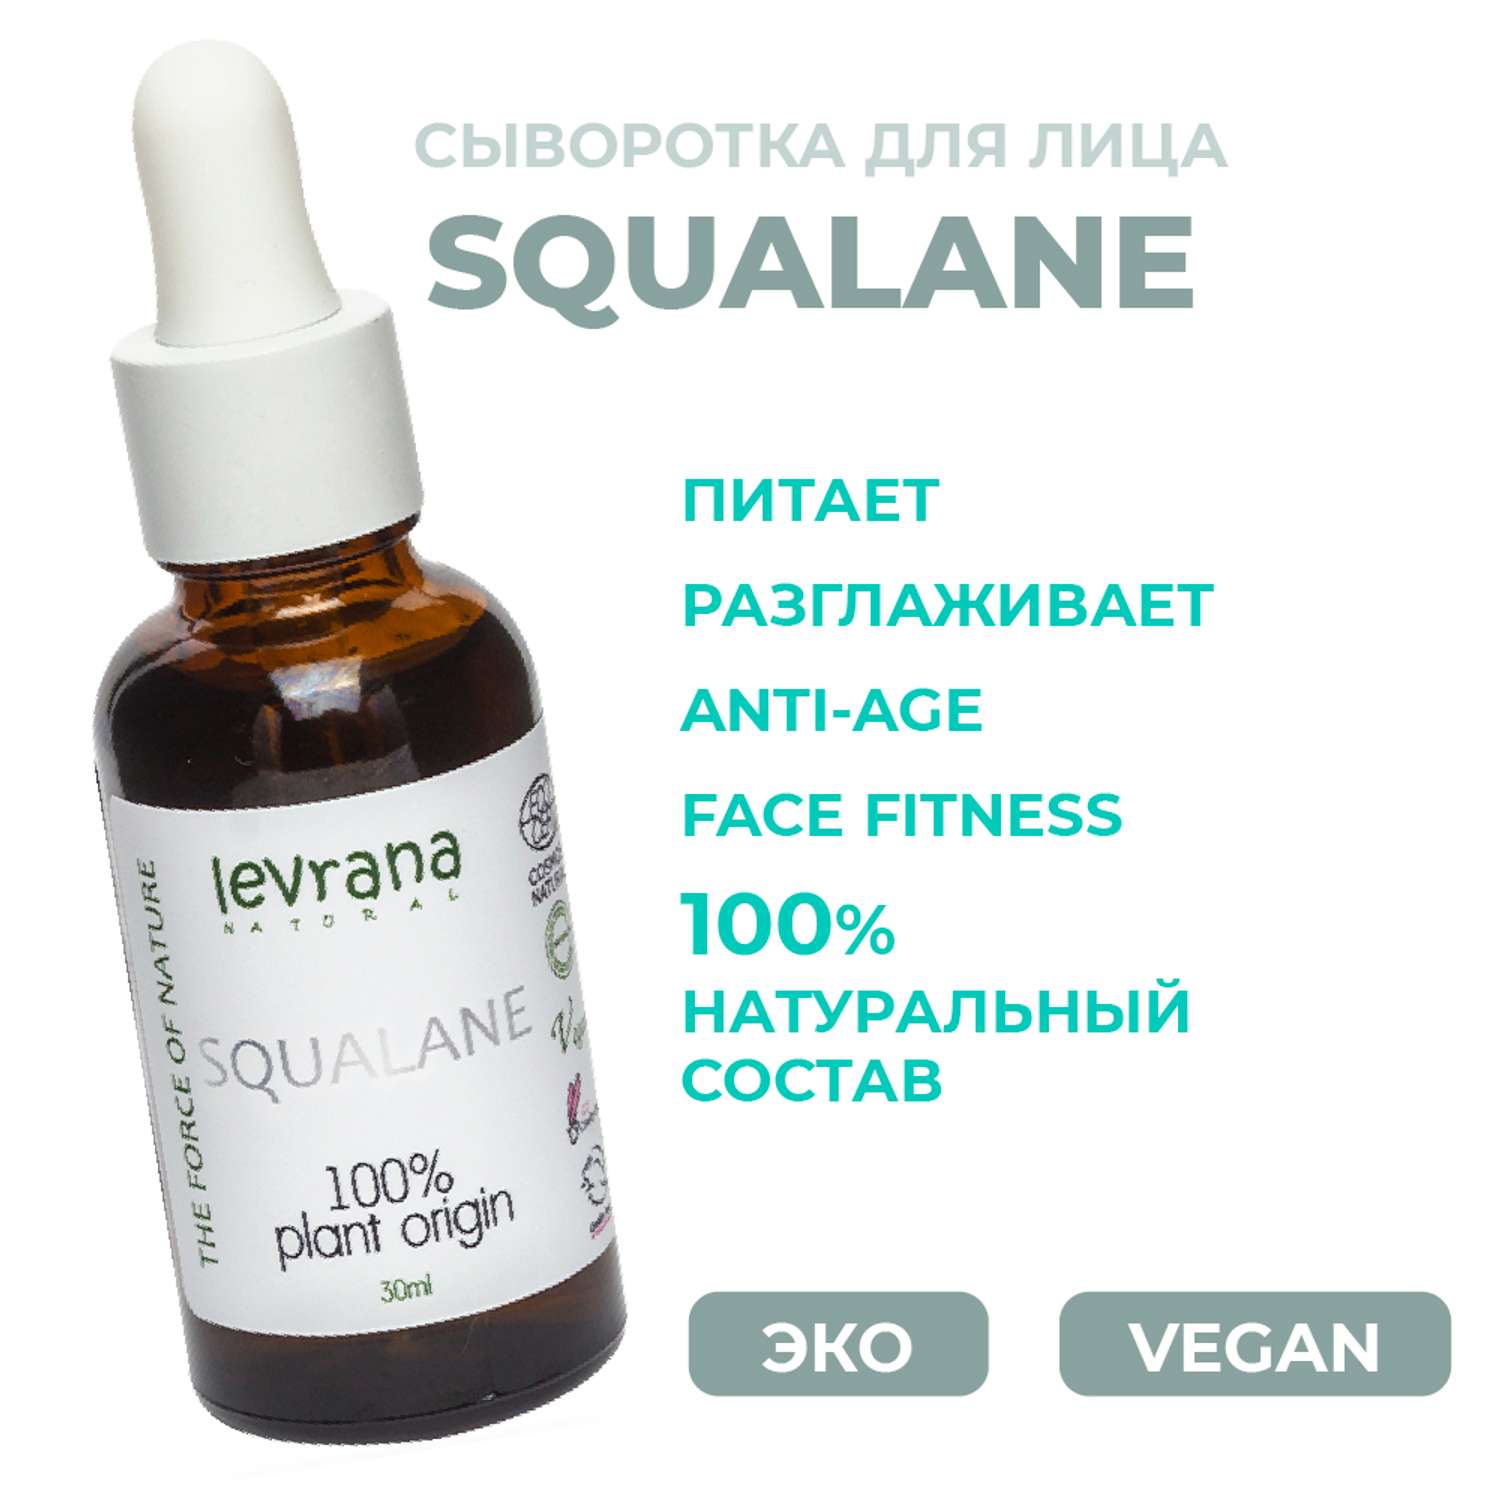 Сыворотка Levrana Squalane 100% растительный сквалан 30мл - фото 2